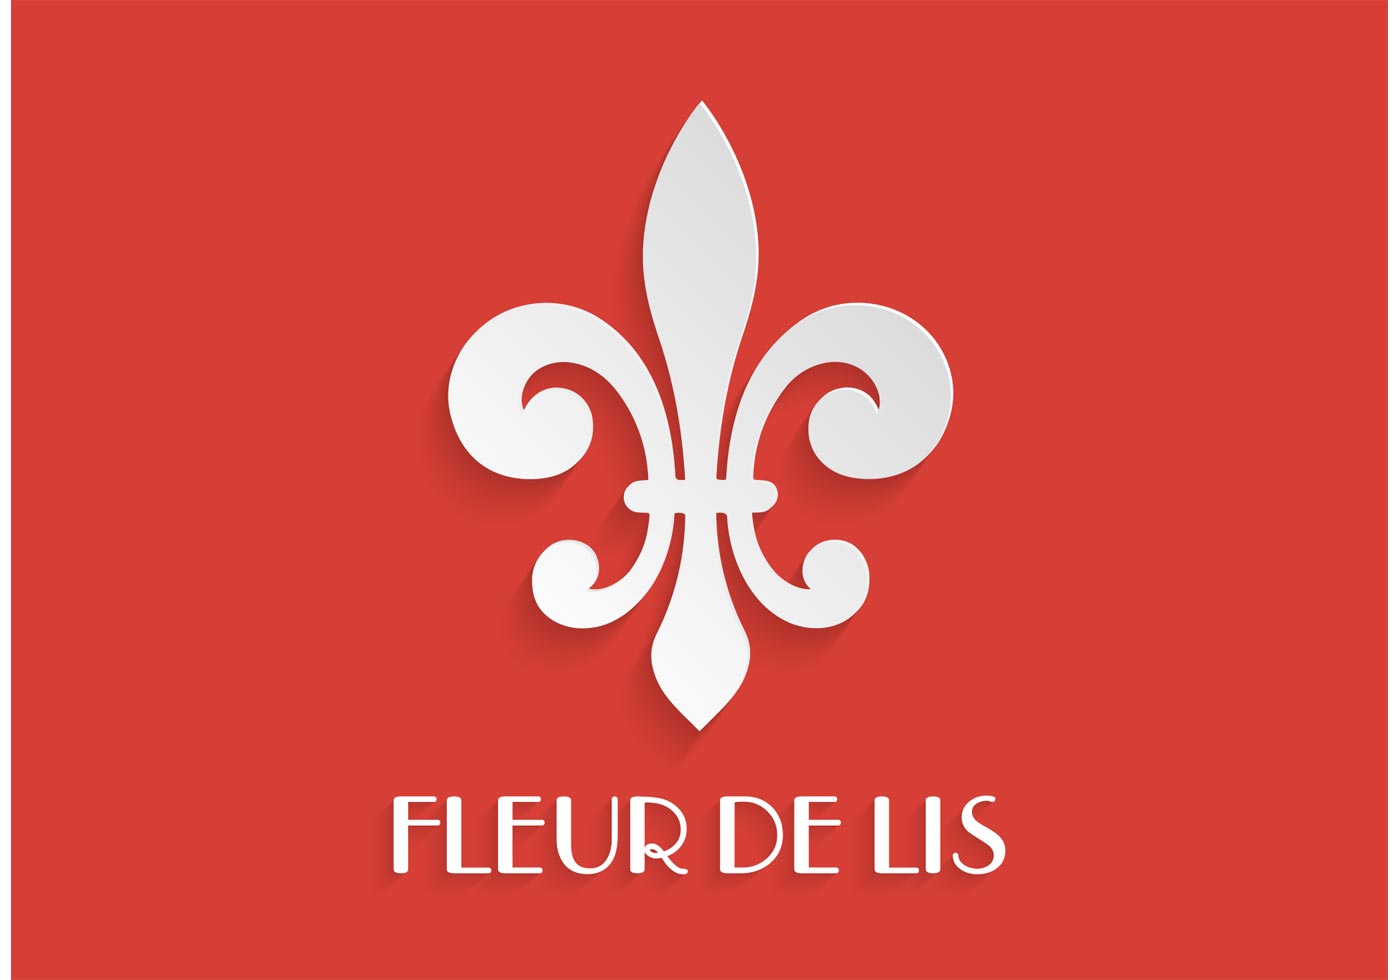 Сайт де флер. Флер де Лис. Логотип Флер де Лис. Akth lt KBC dtrnjh. Флер де Лис символ Франции.